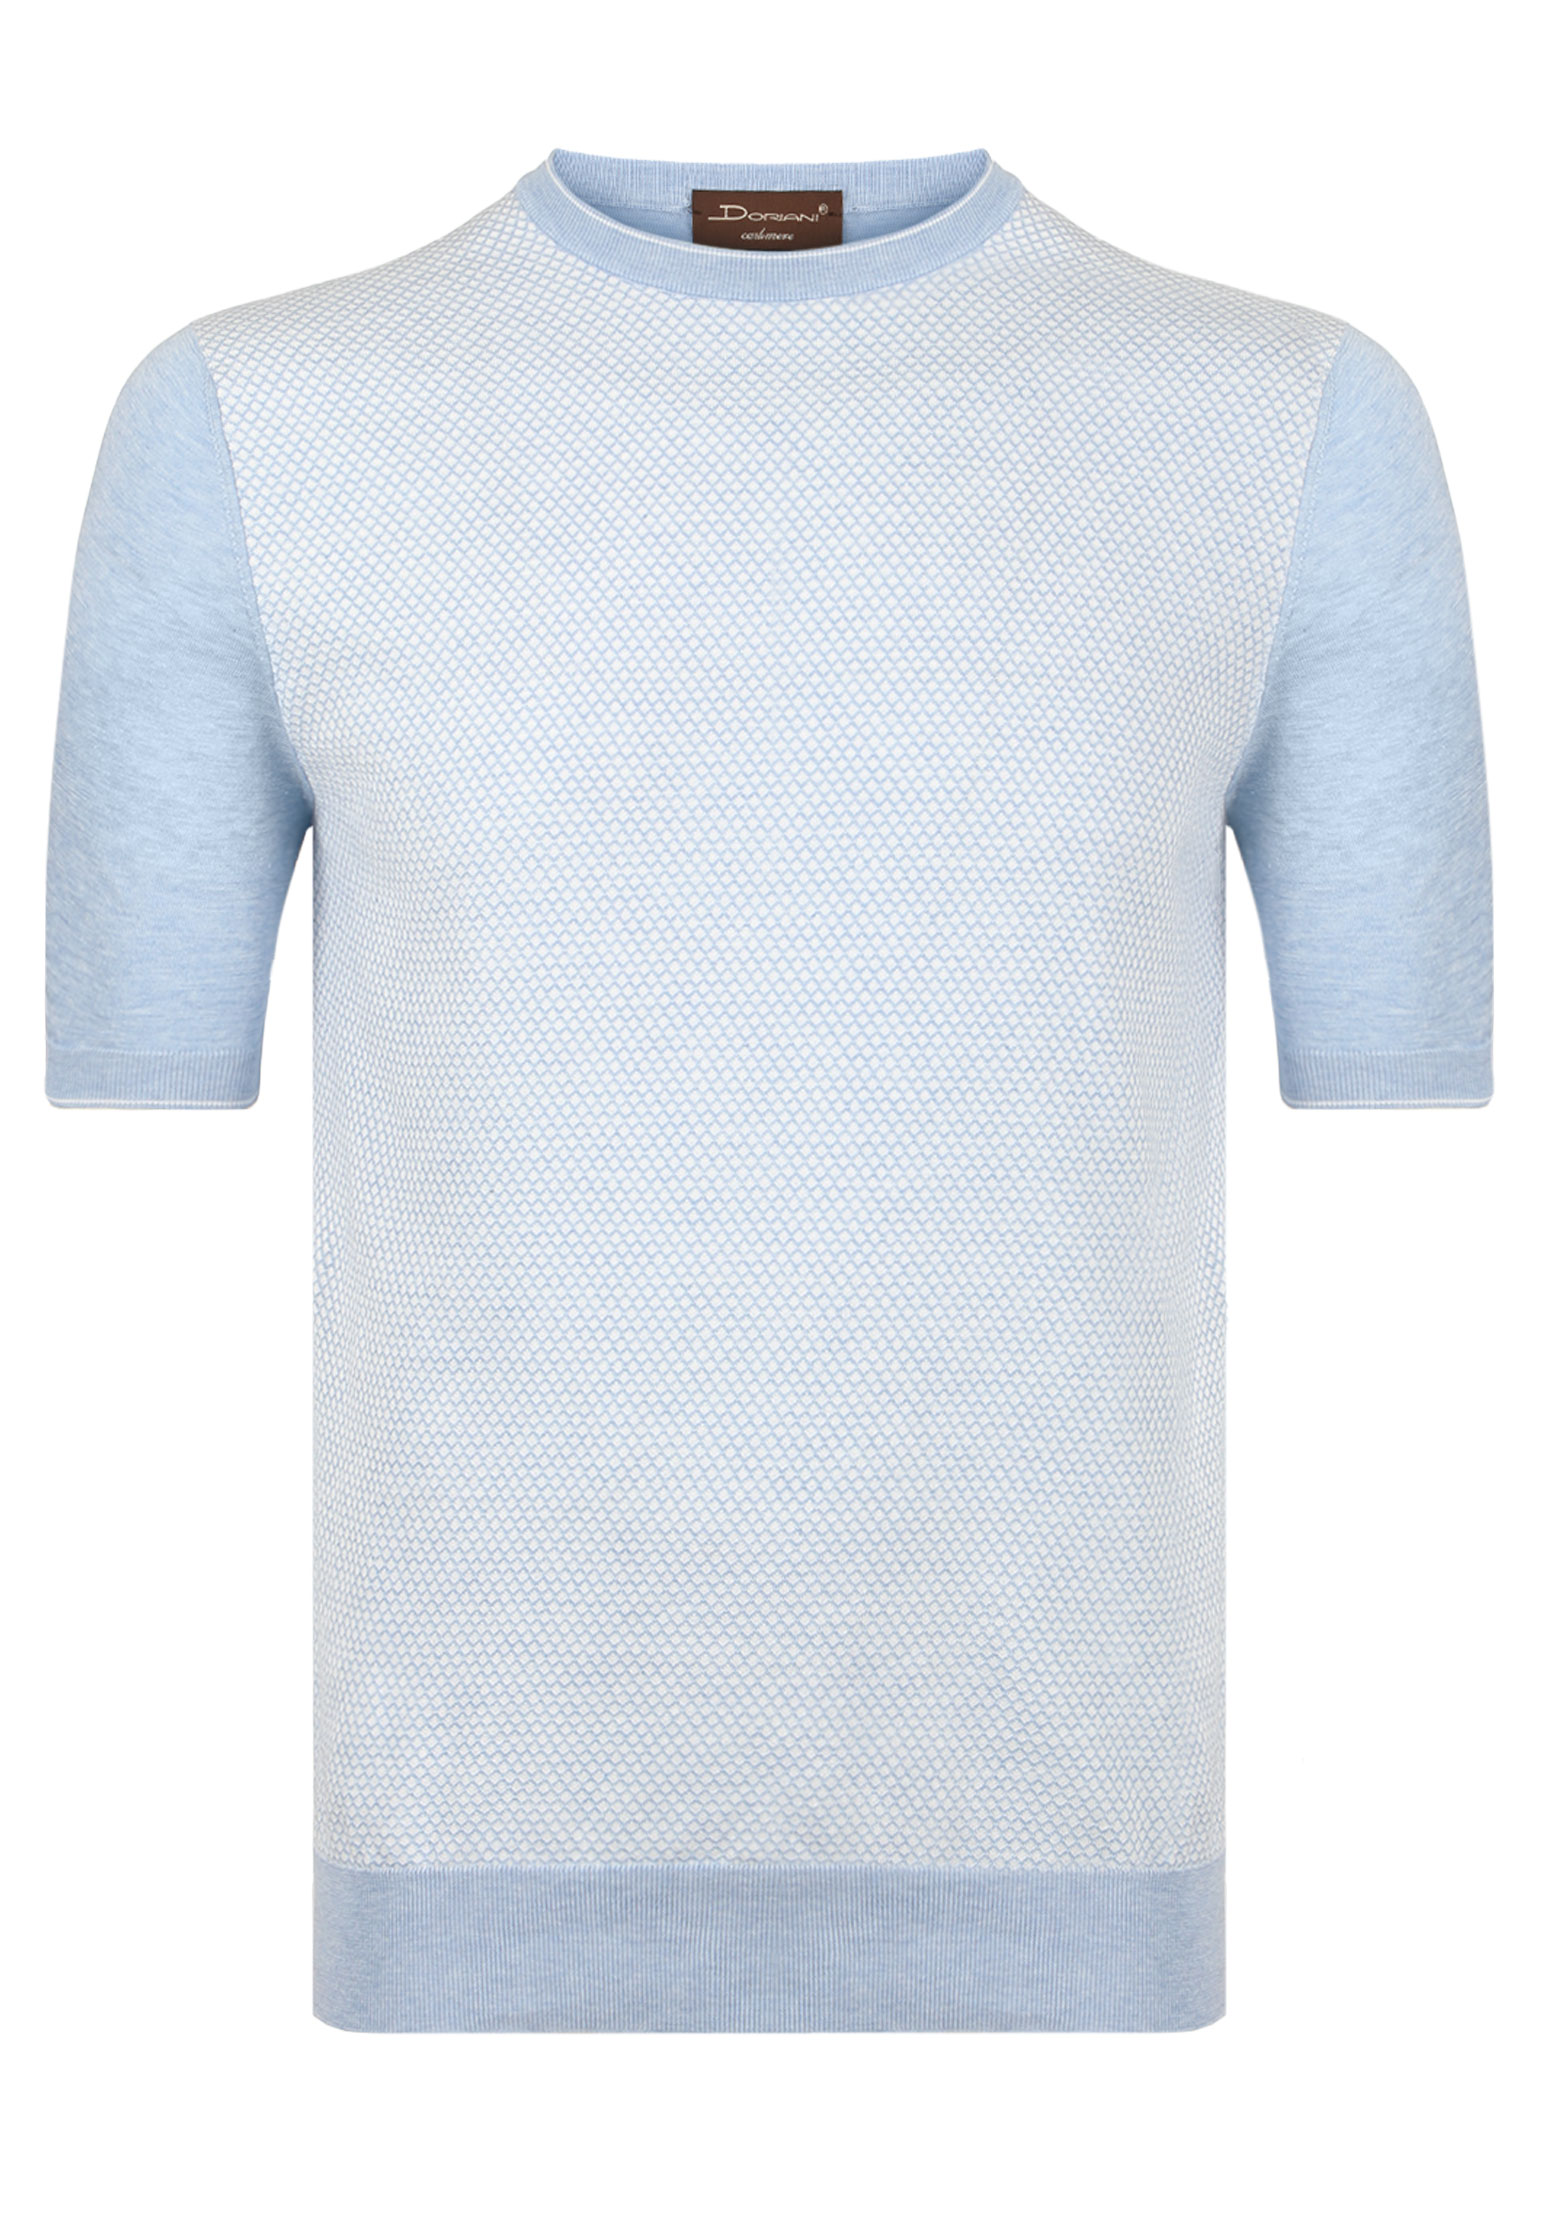 Пуловер DORIANI Голубой, размер 50